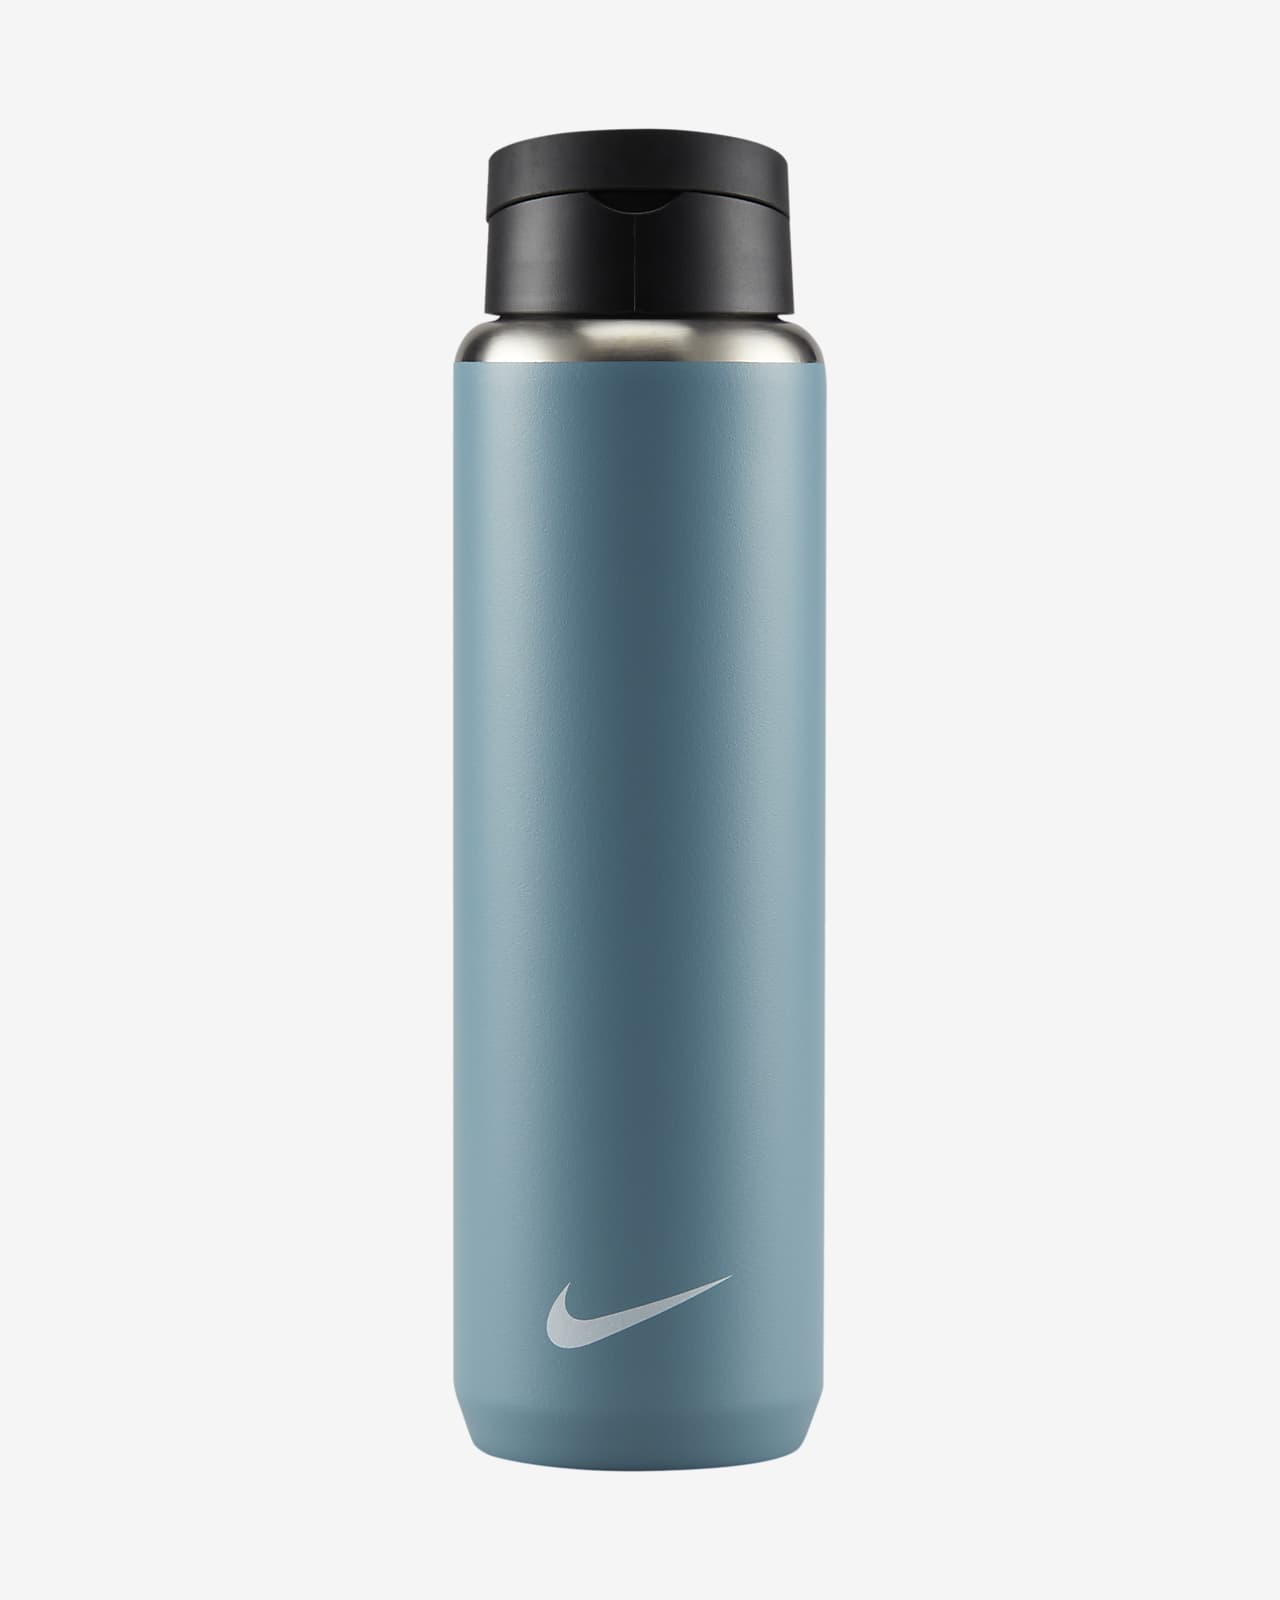 Nike Recharge Trinkflasche aus Edelstahl mit Trinkhalm (710 ml)